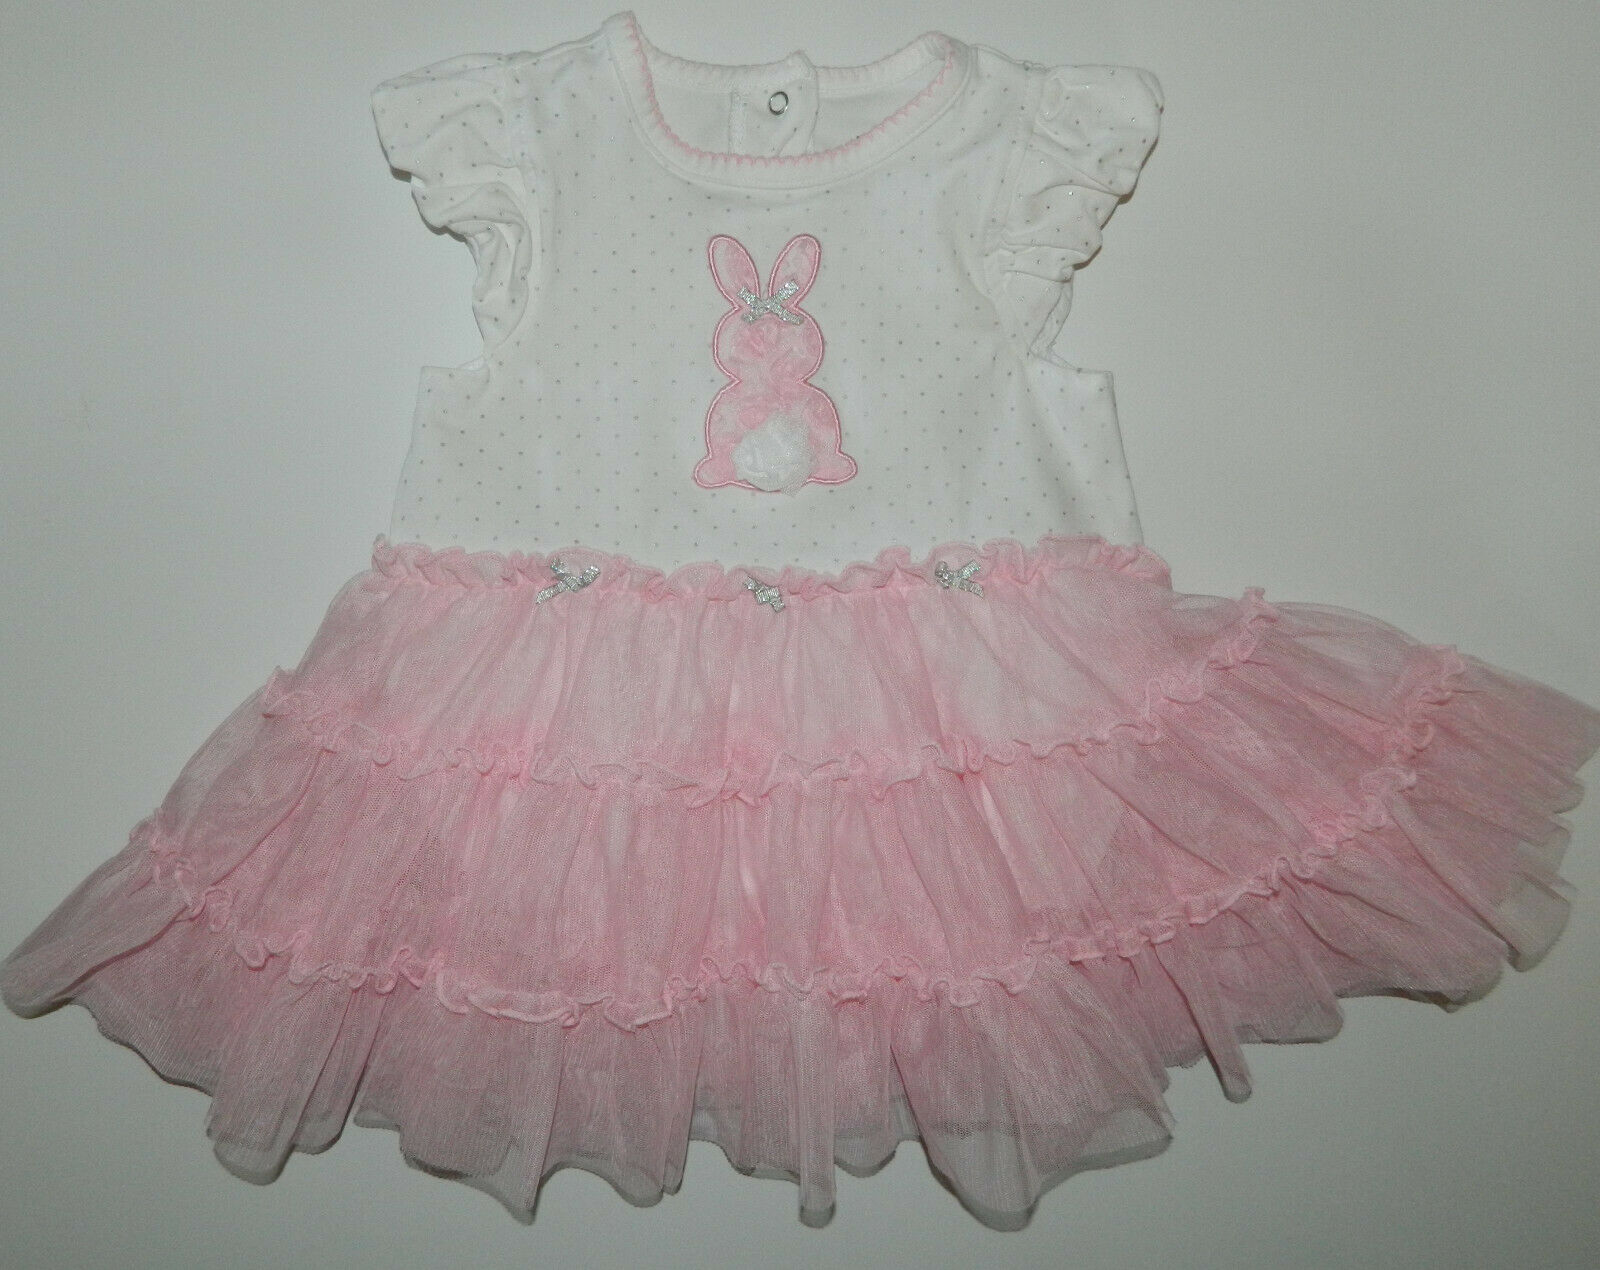 Little Me Girl'spink Gray Polka Dot Bunny Rabbit Tulle Romper Dress* 12 Months